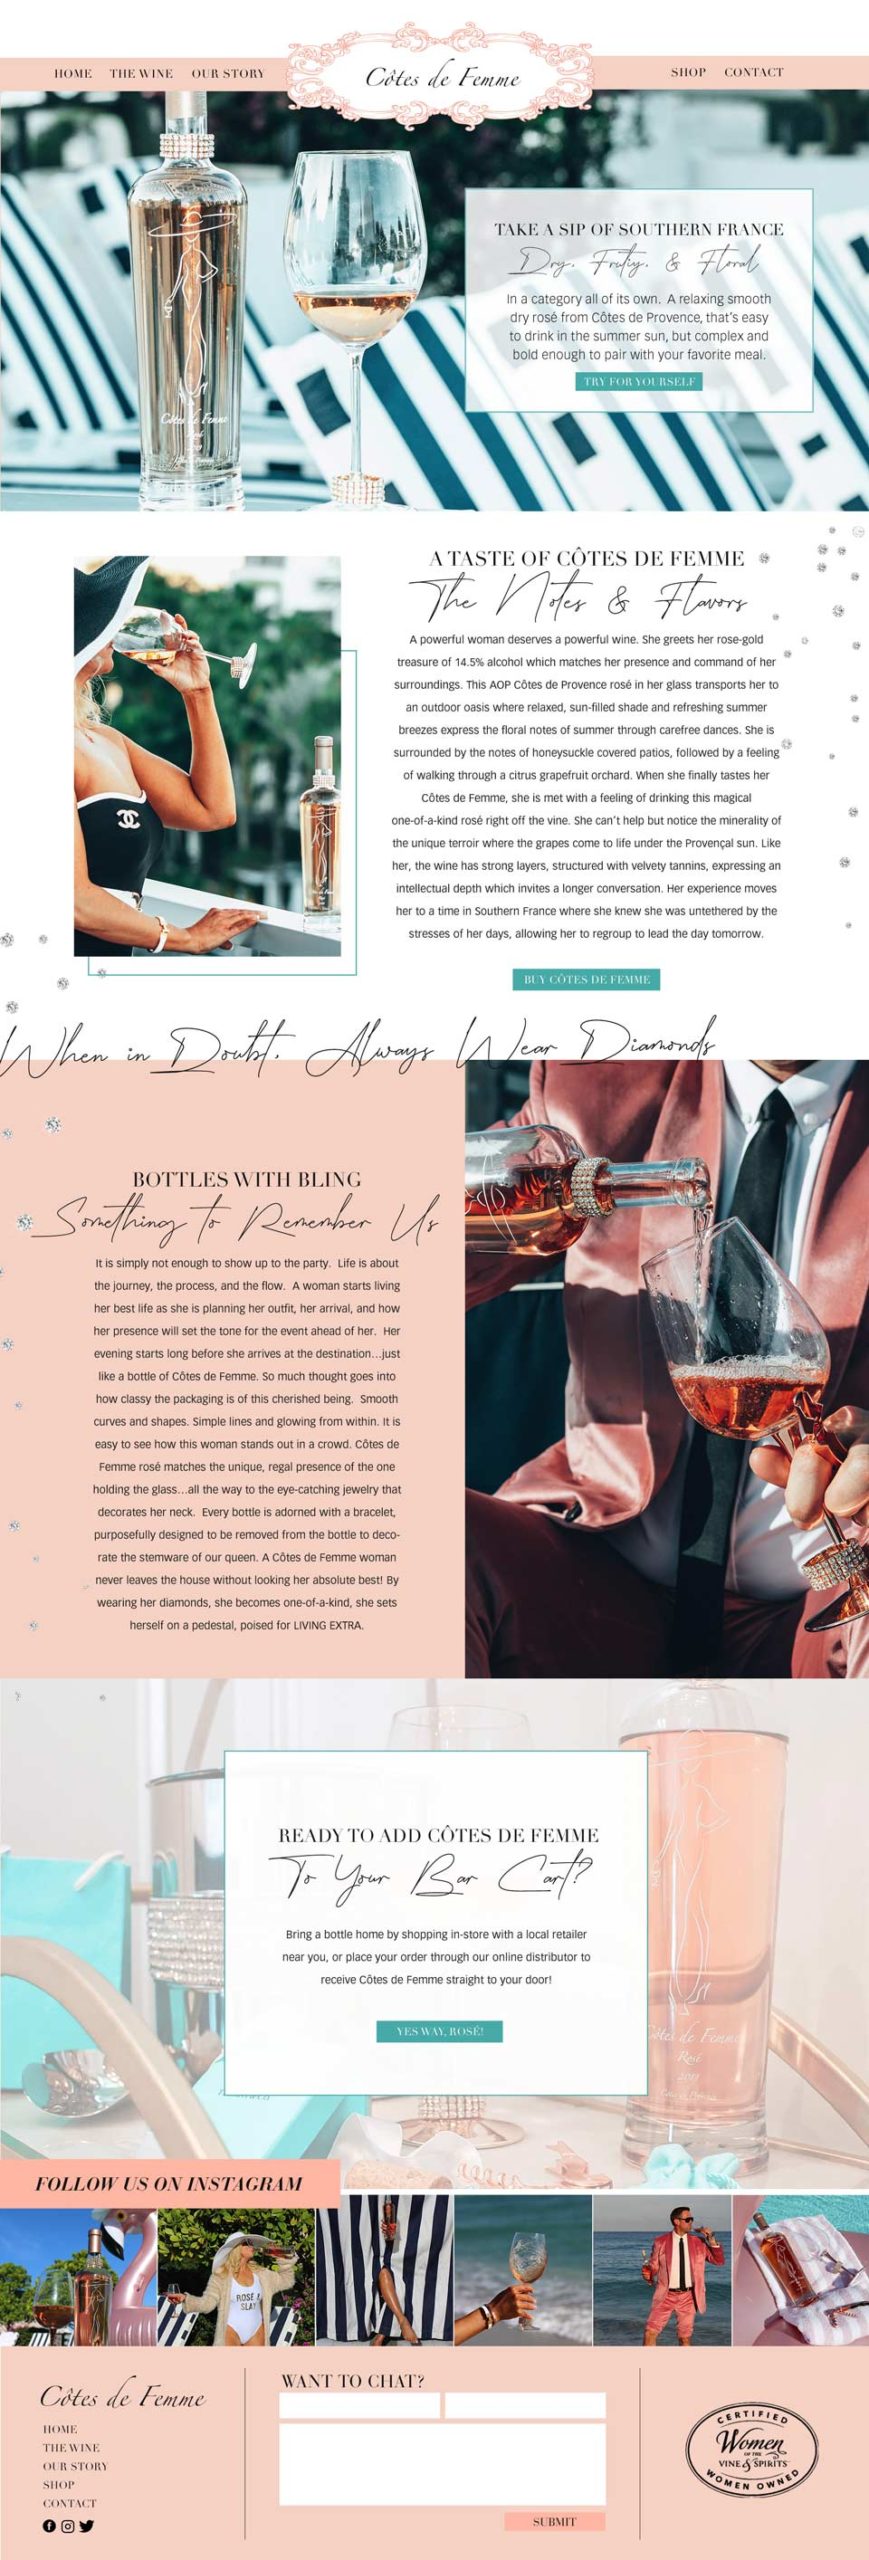 Côtes de Femme Custom Website Design | The Wine Custom Website Design |